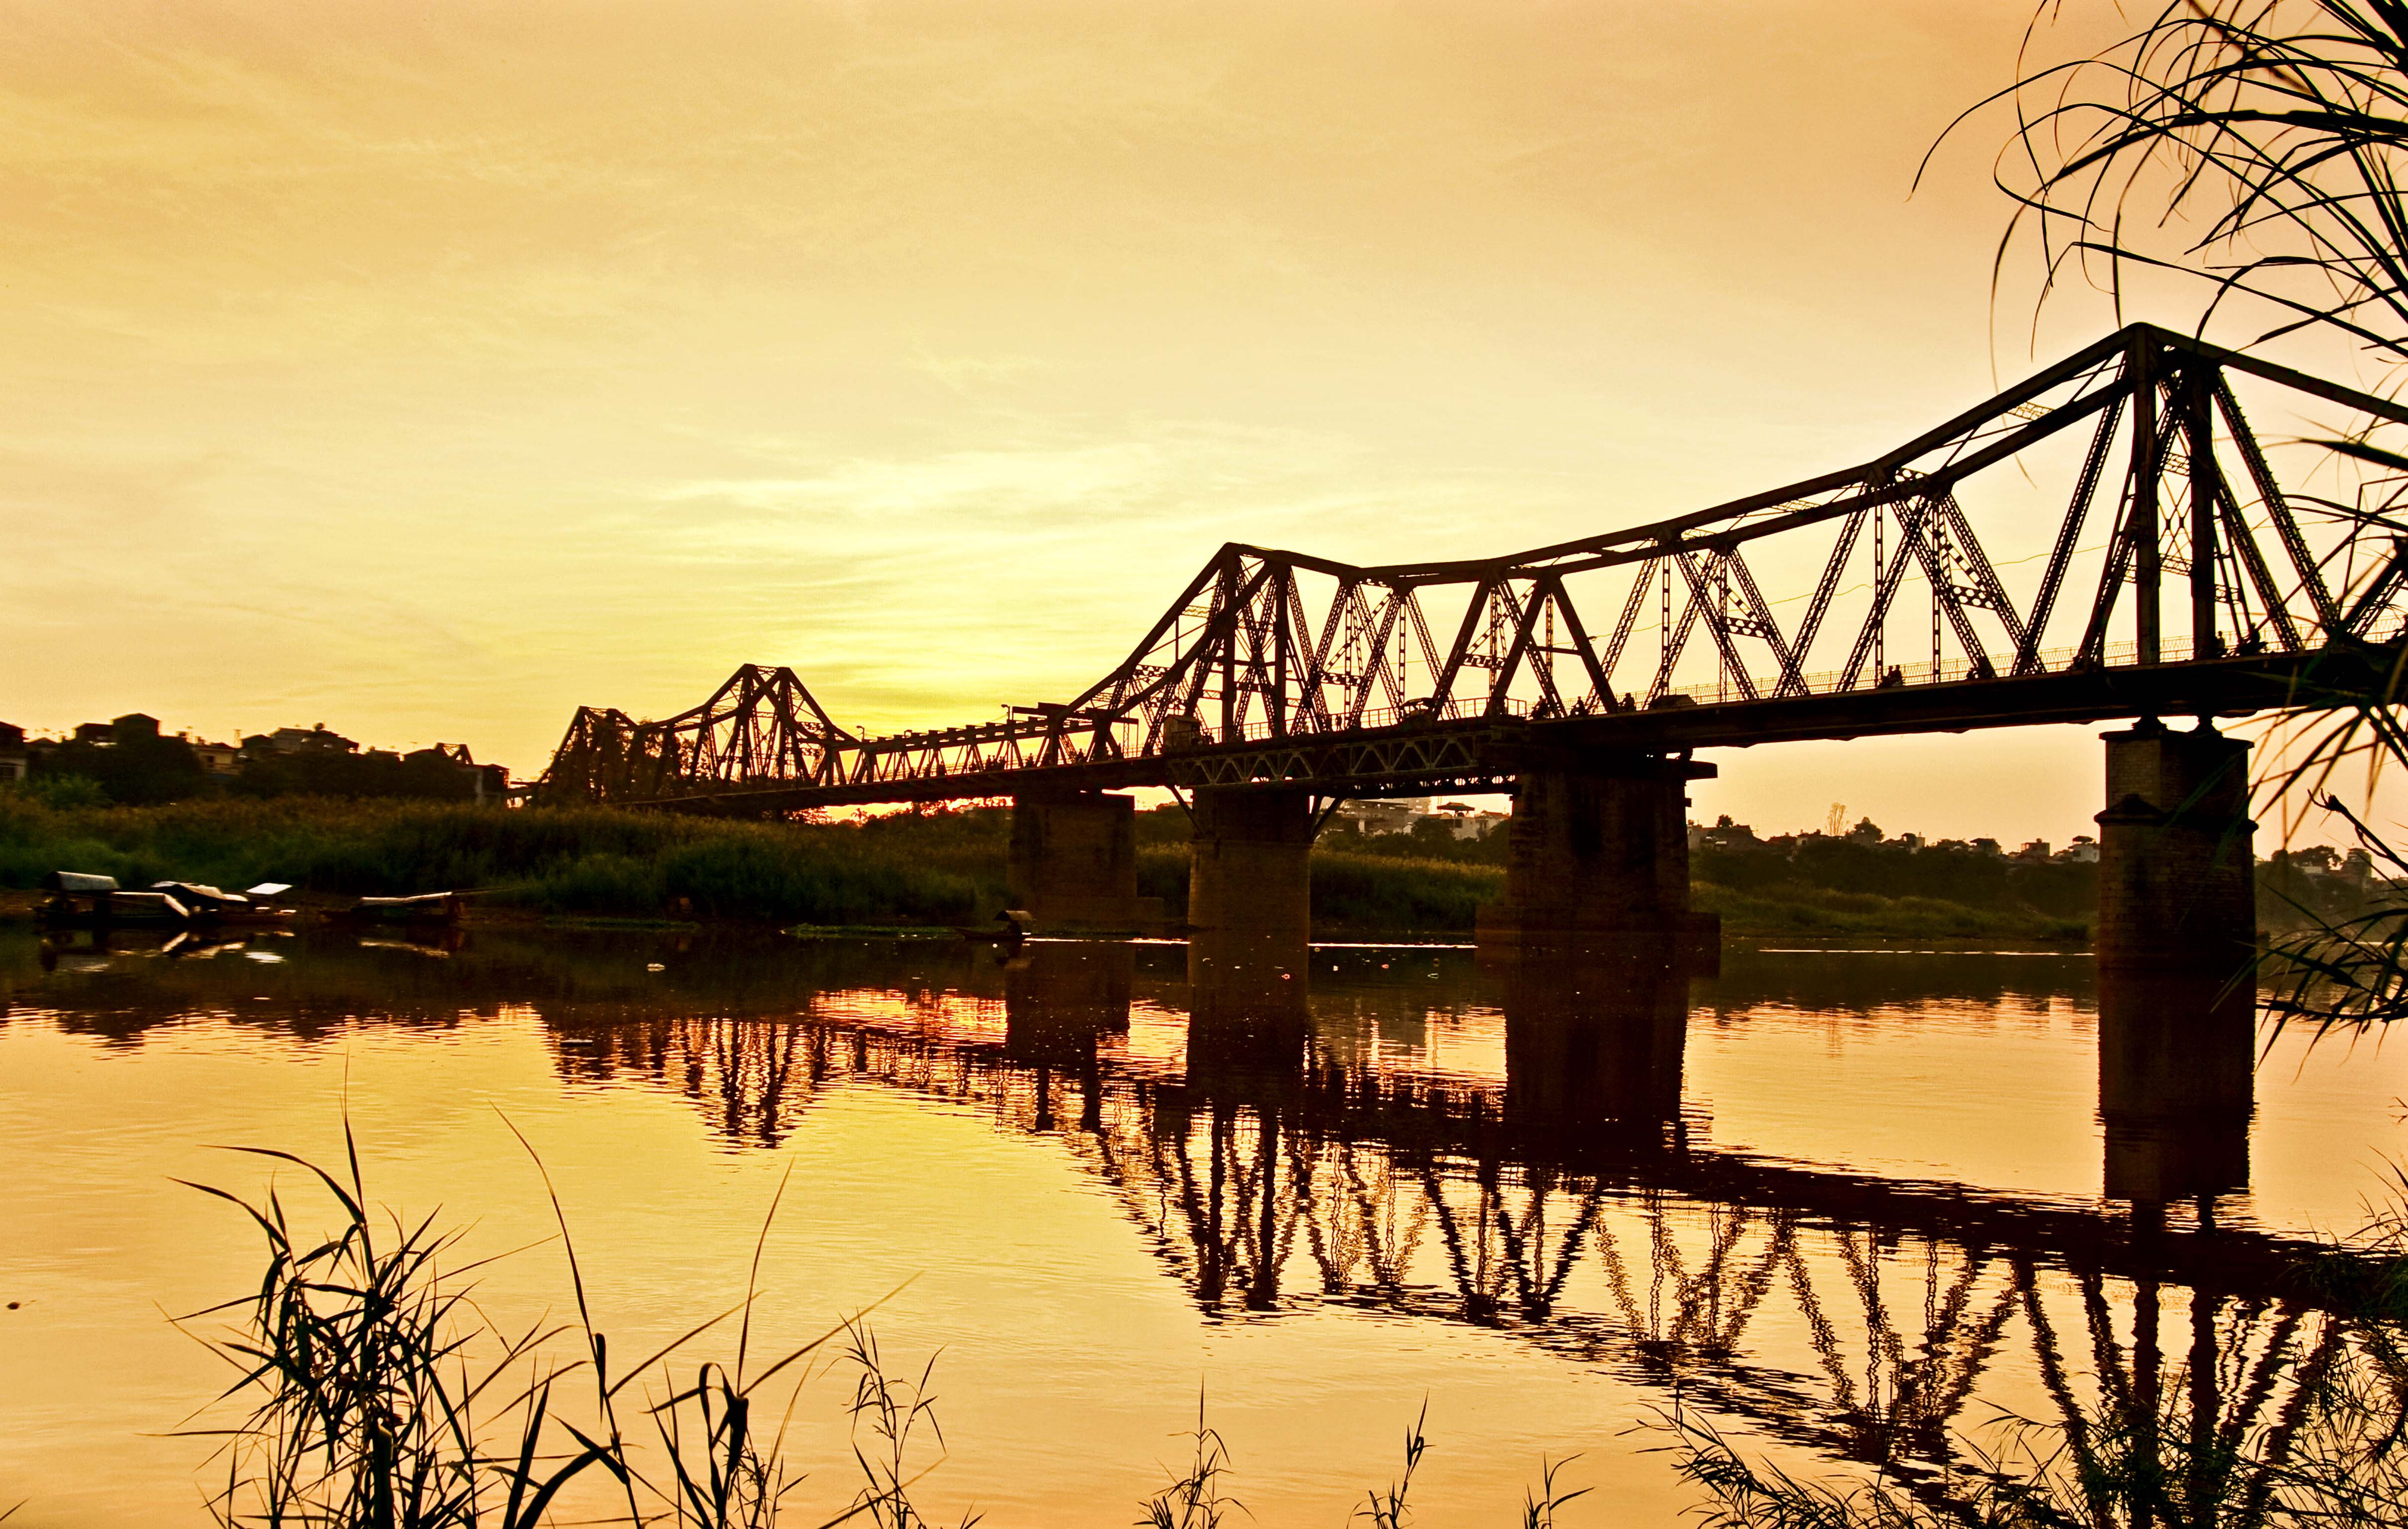 Vẻ đẹp cầu Long Biên - cây cầu thế kỷ